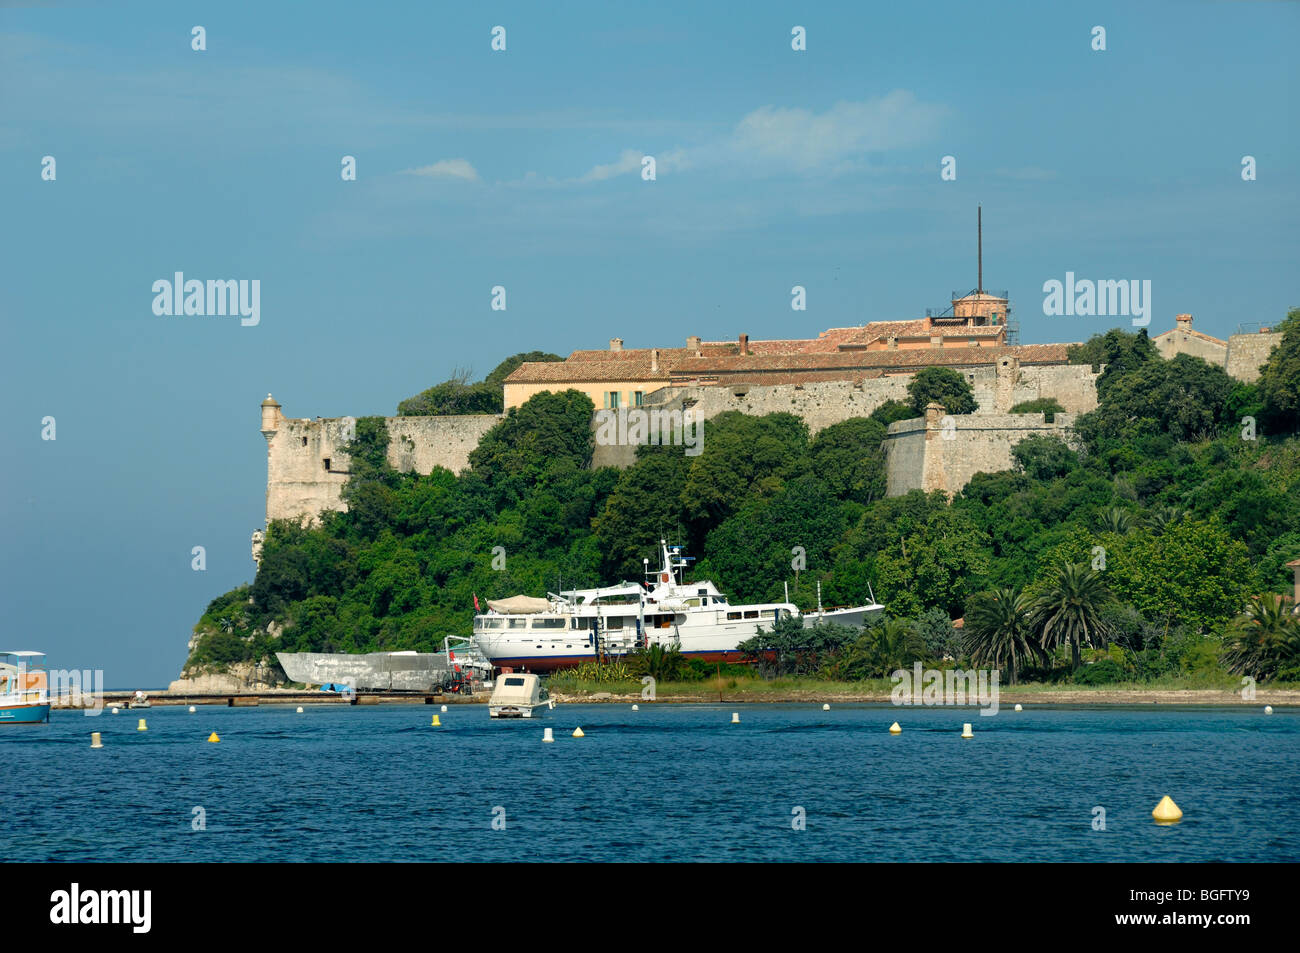 Fort Royal, Île Sainte Marguerite Island, Lérins Islands, Cannes, Alpes-Maritimes, Provence-Alpes-Côte-d'Azur, France Stock Photo